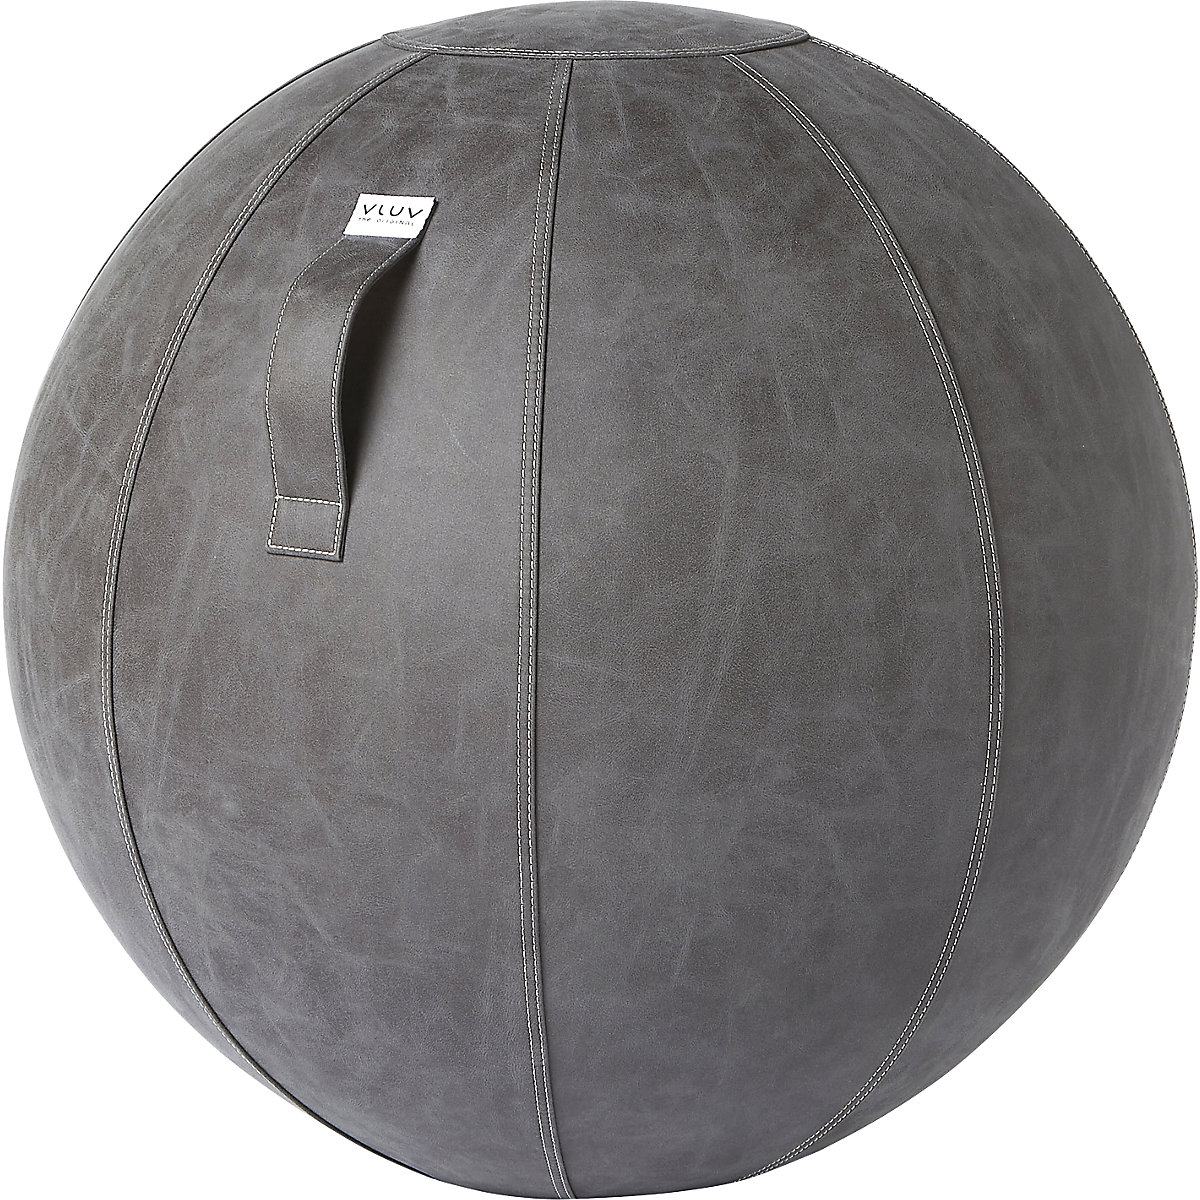 VLUV VEGA Sitzball, veganes Kunstleder, 700 – 750 mm, dunkelgrau